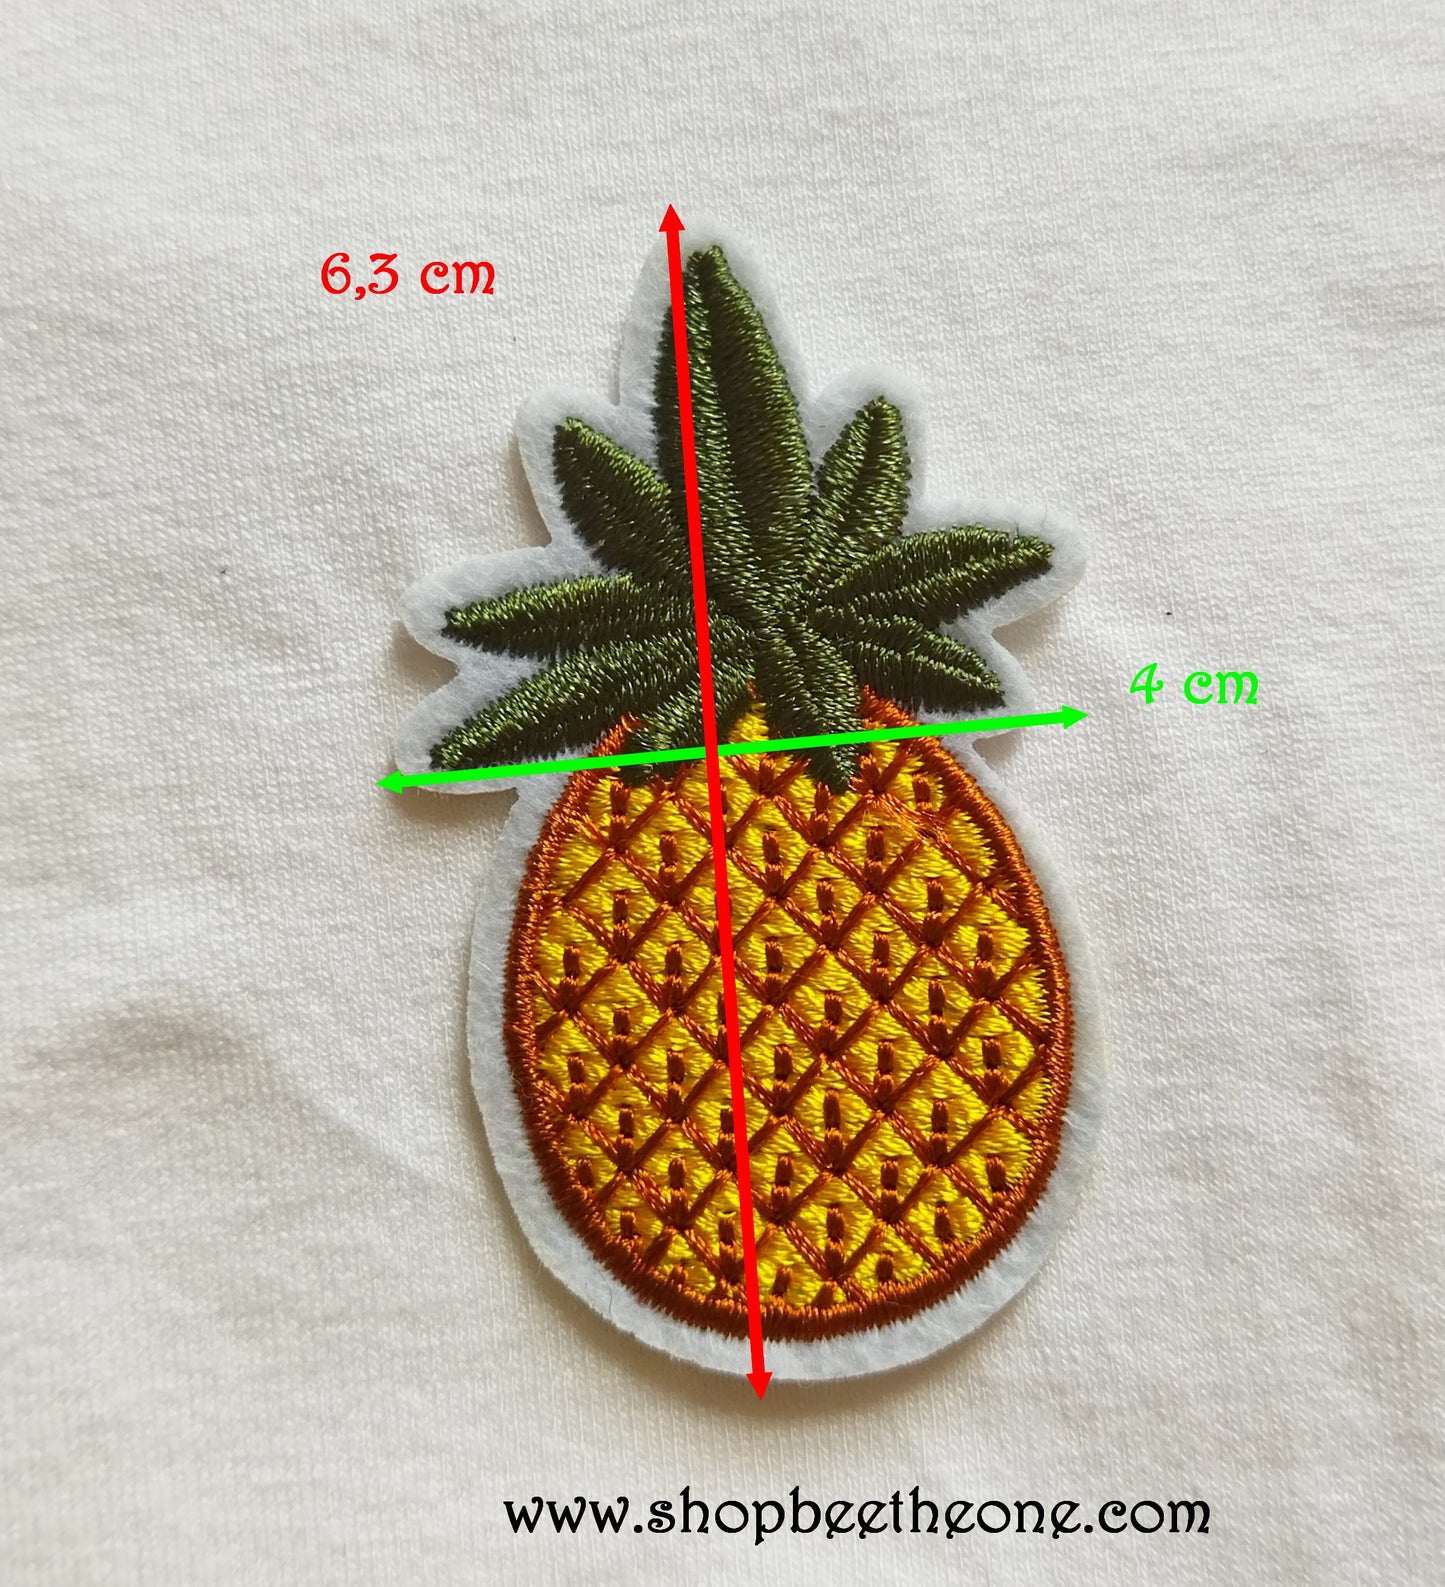 Petit écusson patch brodé applique Ananas - 6,3 cm (à coudre ou repasser)